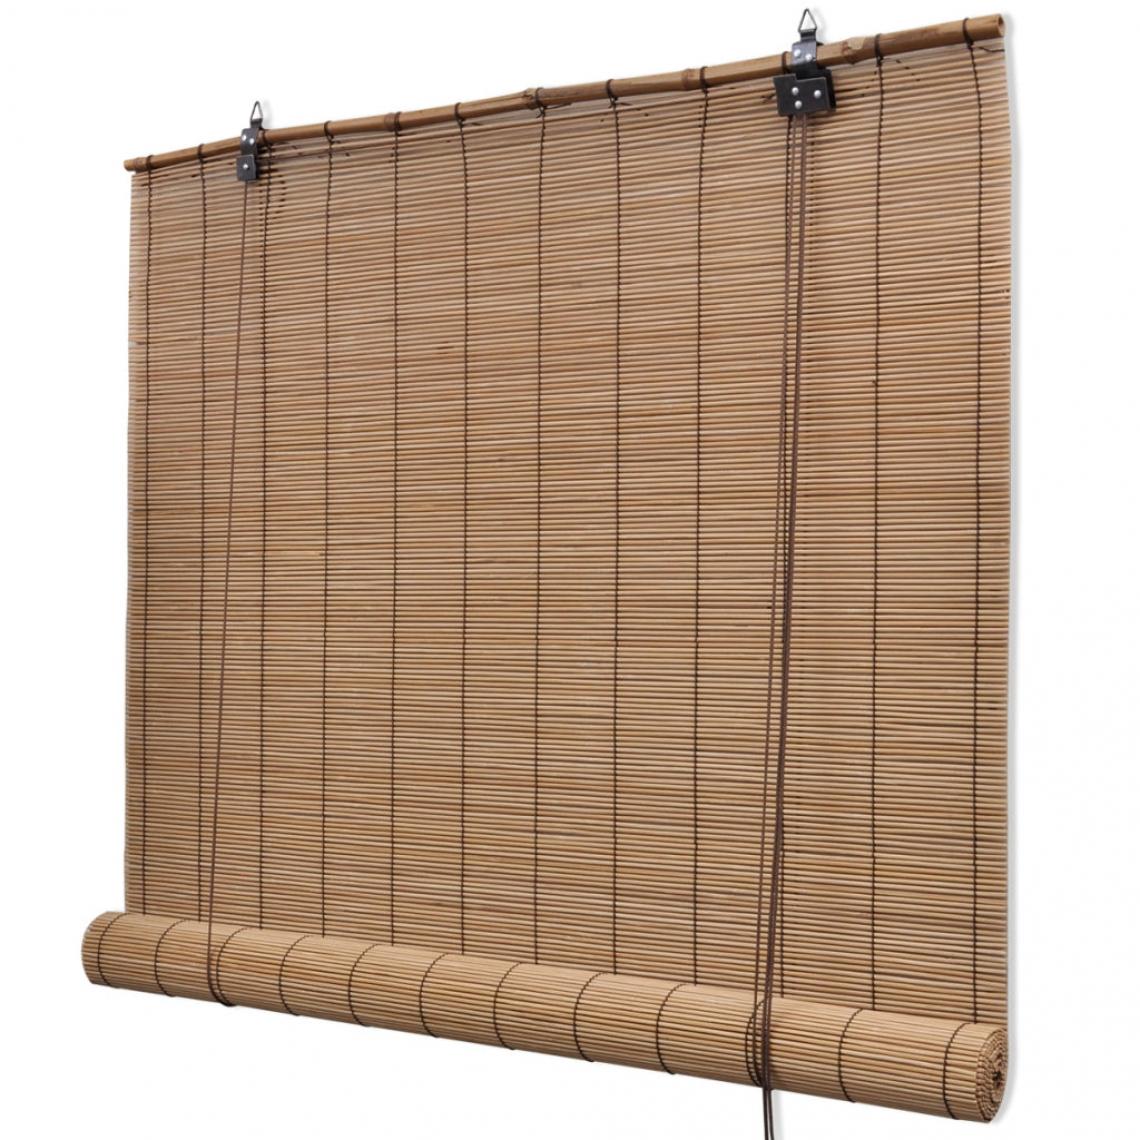 Helloshop26 - Store enrouleur bambou brun 80 x 160 cm fenêtre rideau pare-vue volet roulant 4102145/2 - Store compatible Velux